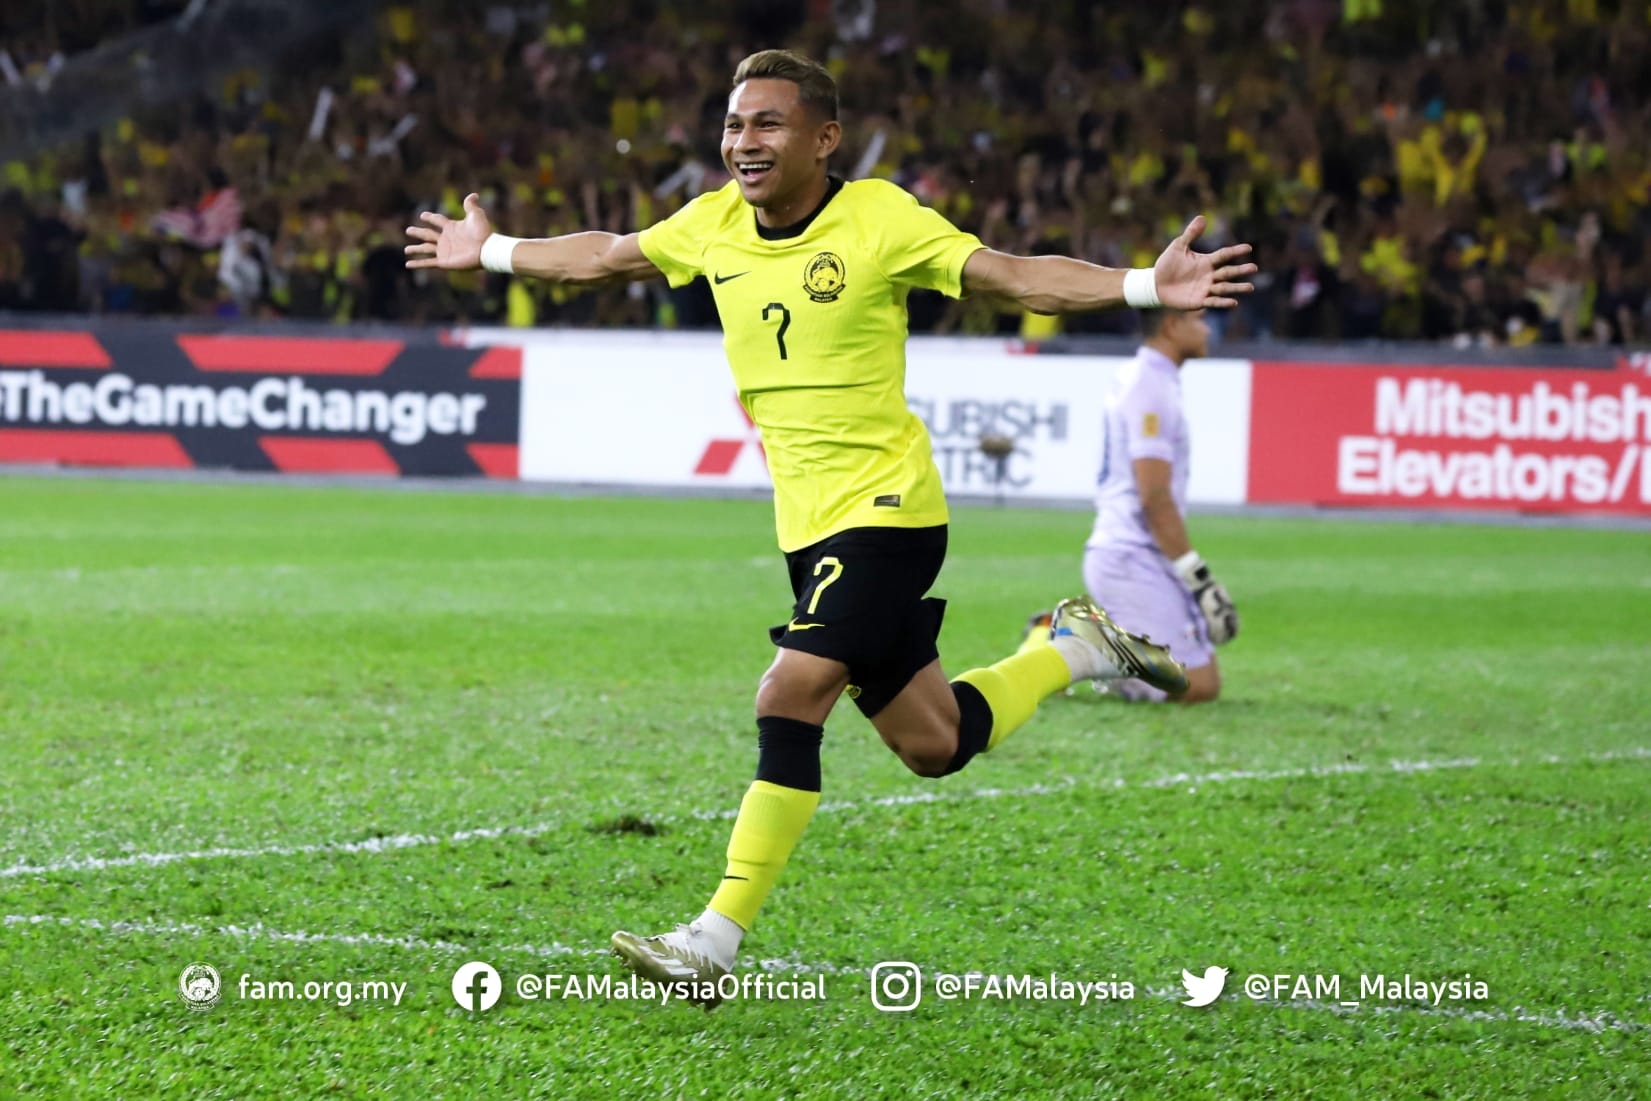 Lợi thế sân nhà nhanh chóng được Malaysia triển khai thành lợi thế bàn thắng. Phút 11, Faisal Halim bất ngờ xâm nhập vòng cấm, đệm bóng cận thành ghi bàn mở tỉ số cho “Những chú hổ“.